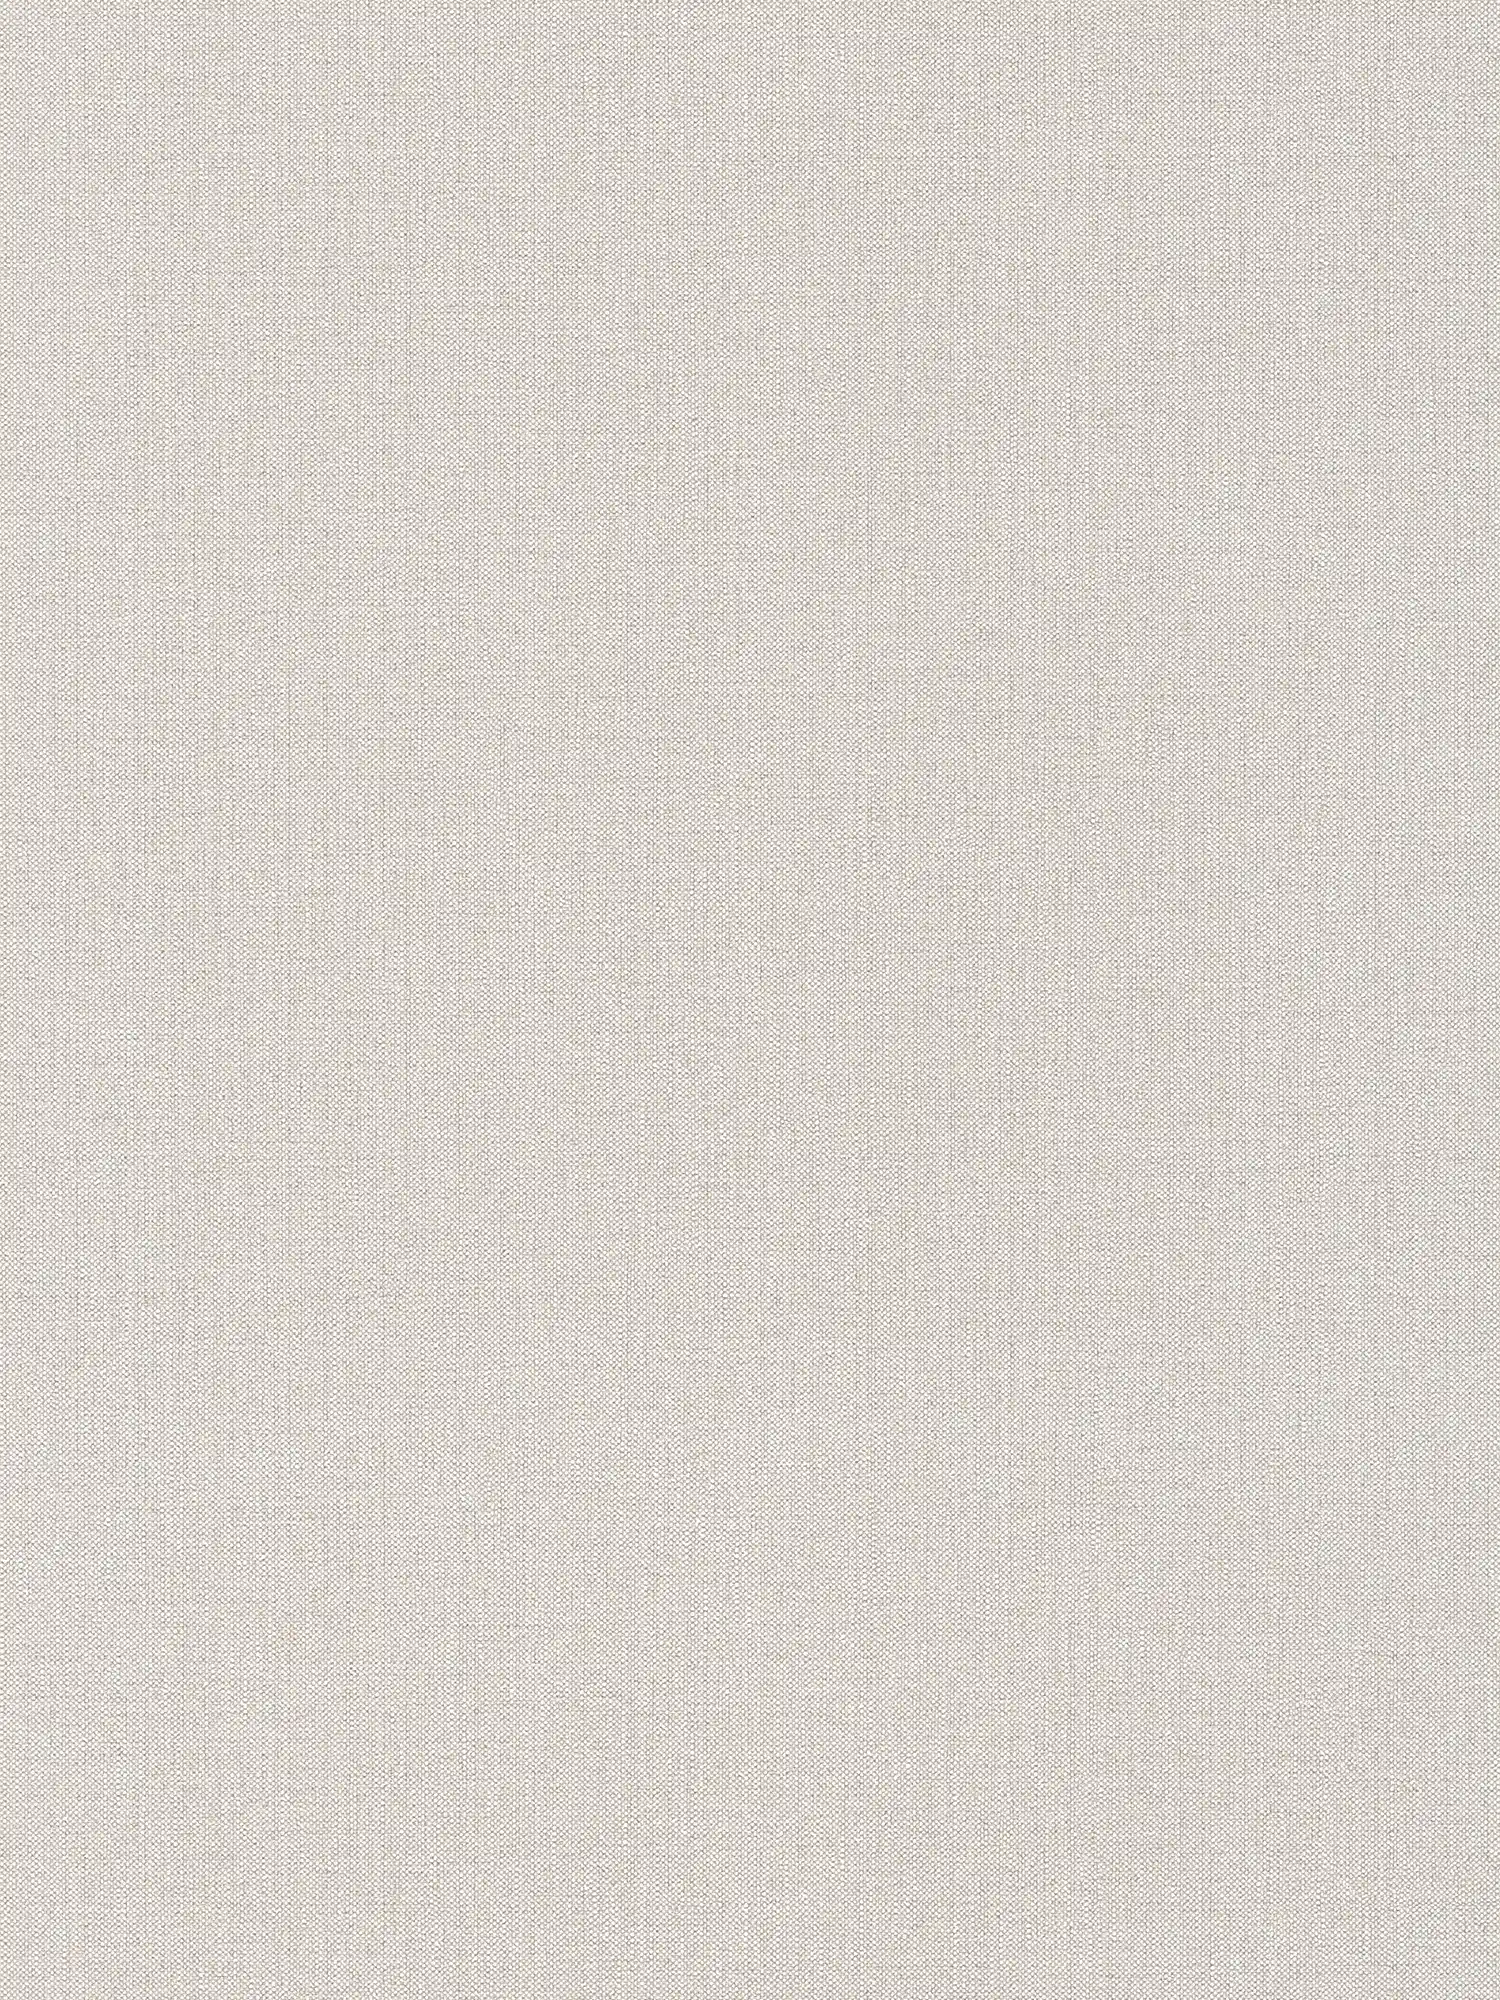 Carta da parati in lino beige grigio screziato in stile scandi
